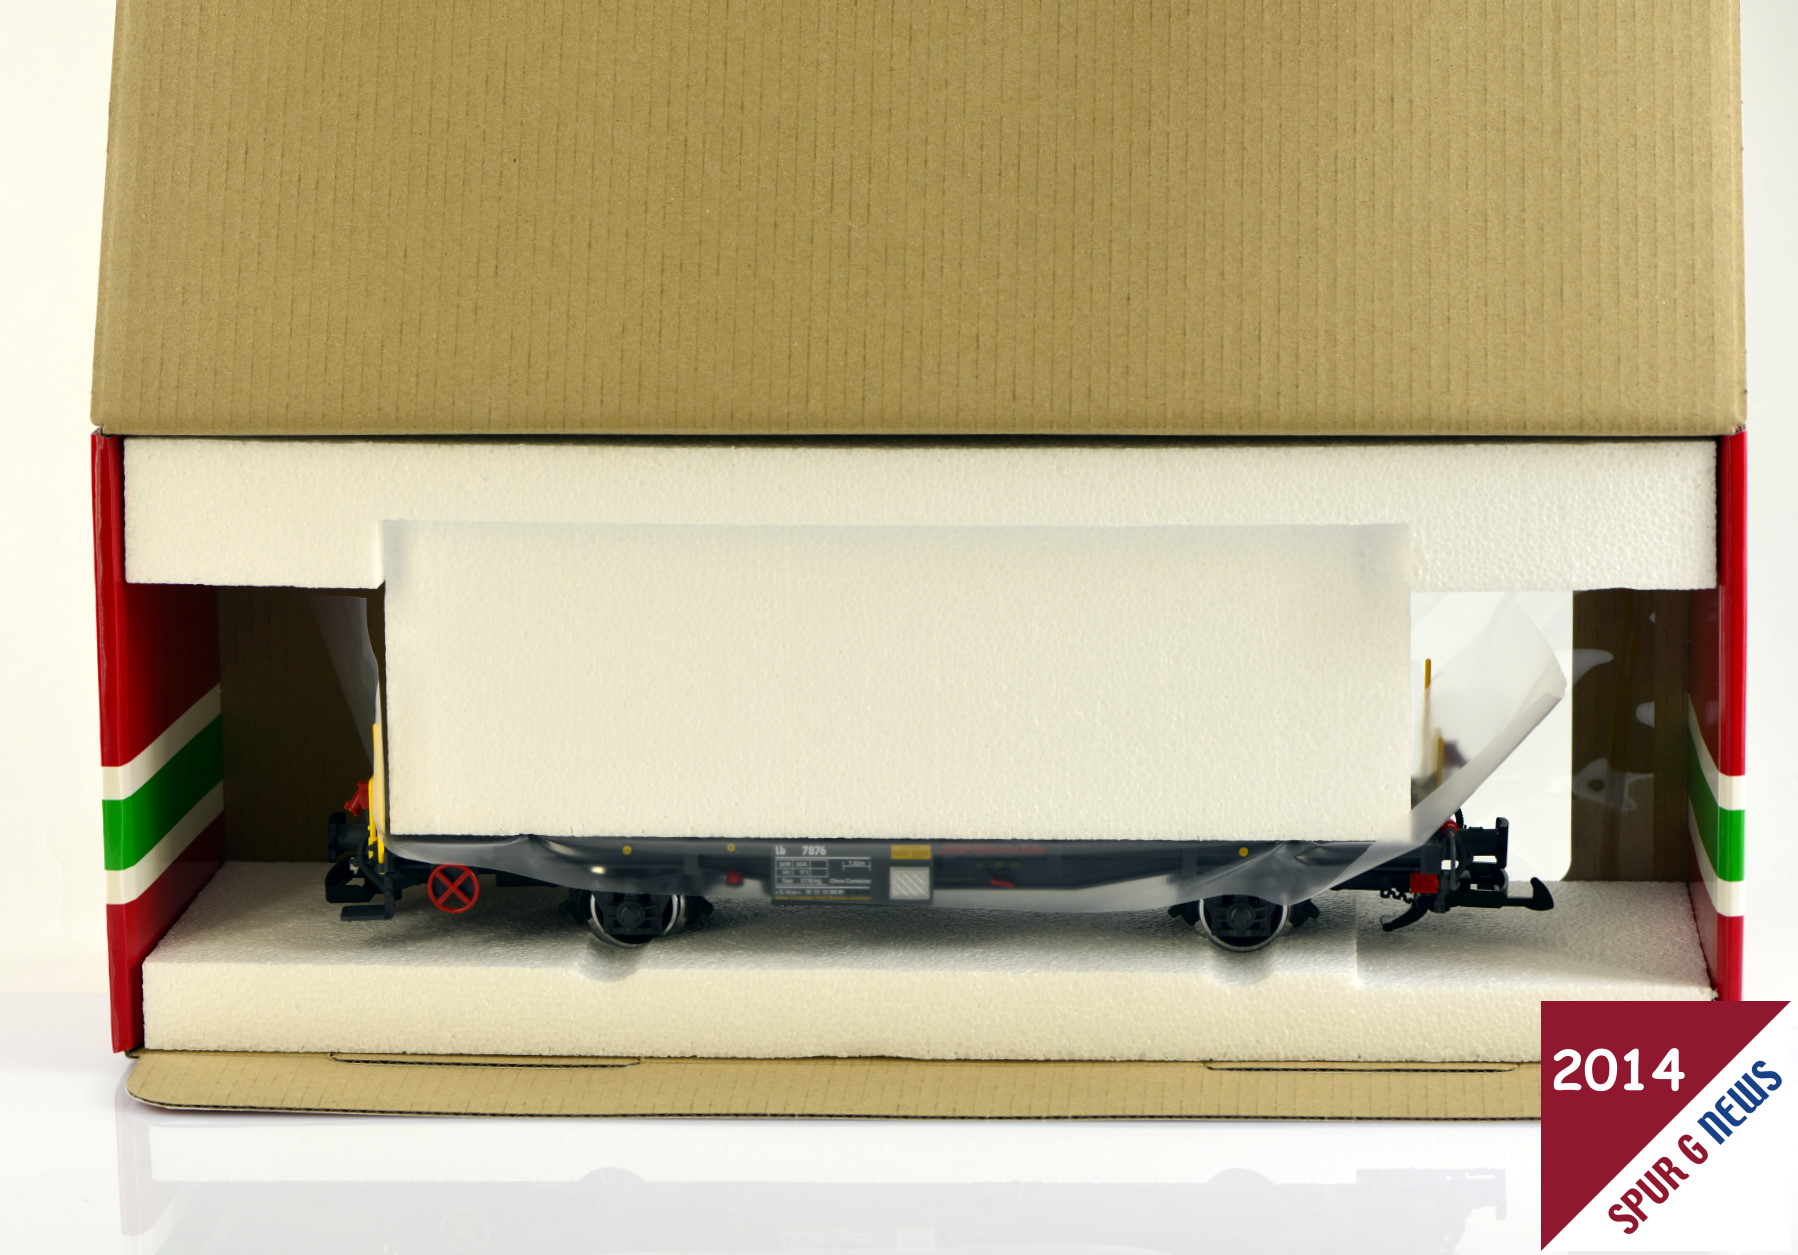 Tragwagen Lb 7876 aus dem dreier Set 47899 RhB Containerwagenset - Neuheit 2013 - ausgeliefert 2014